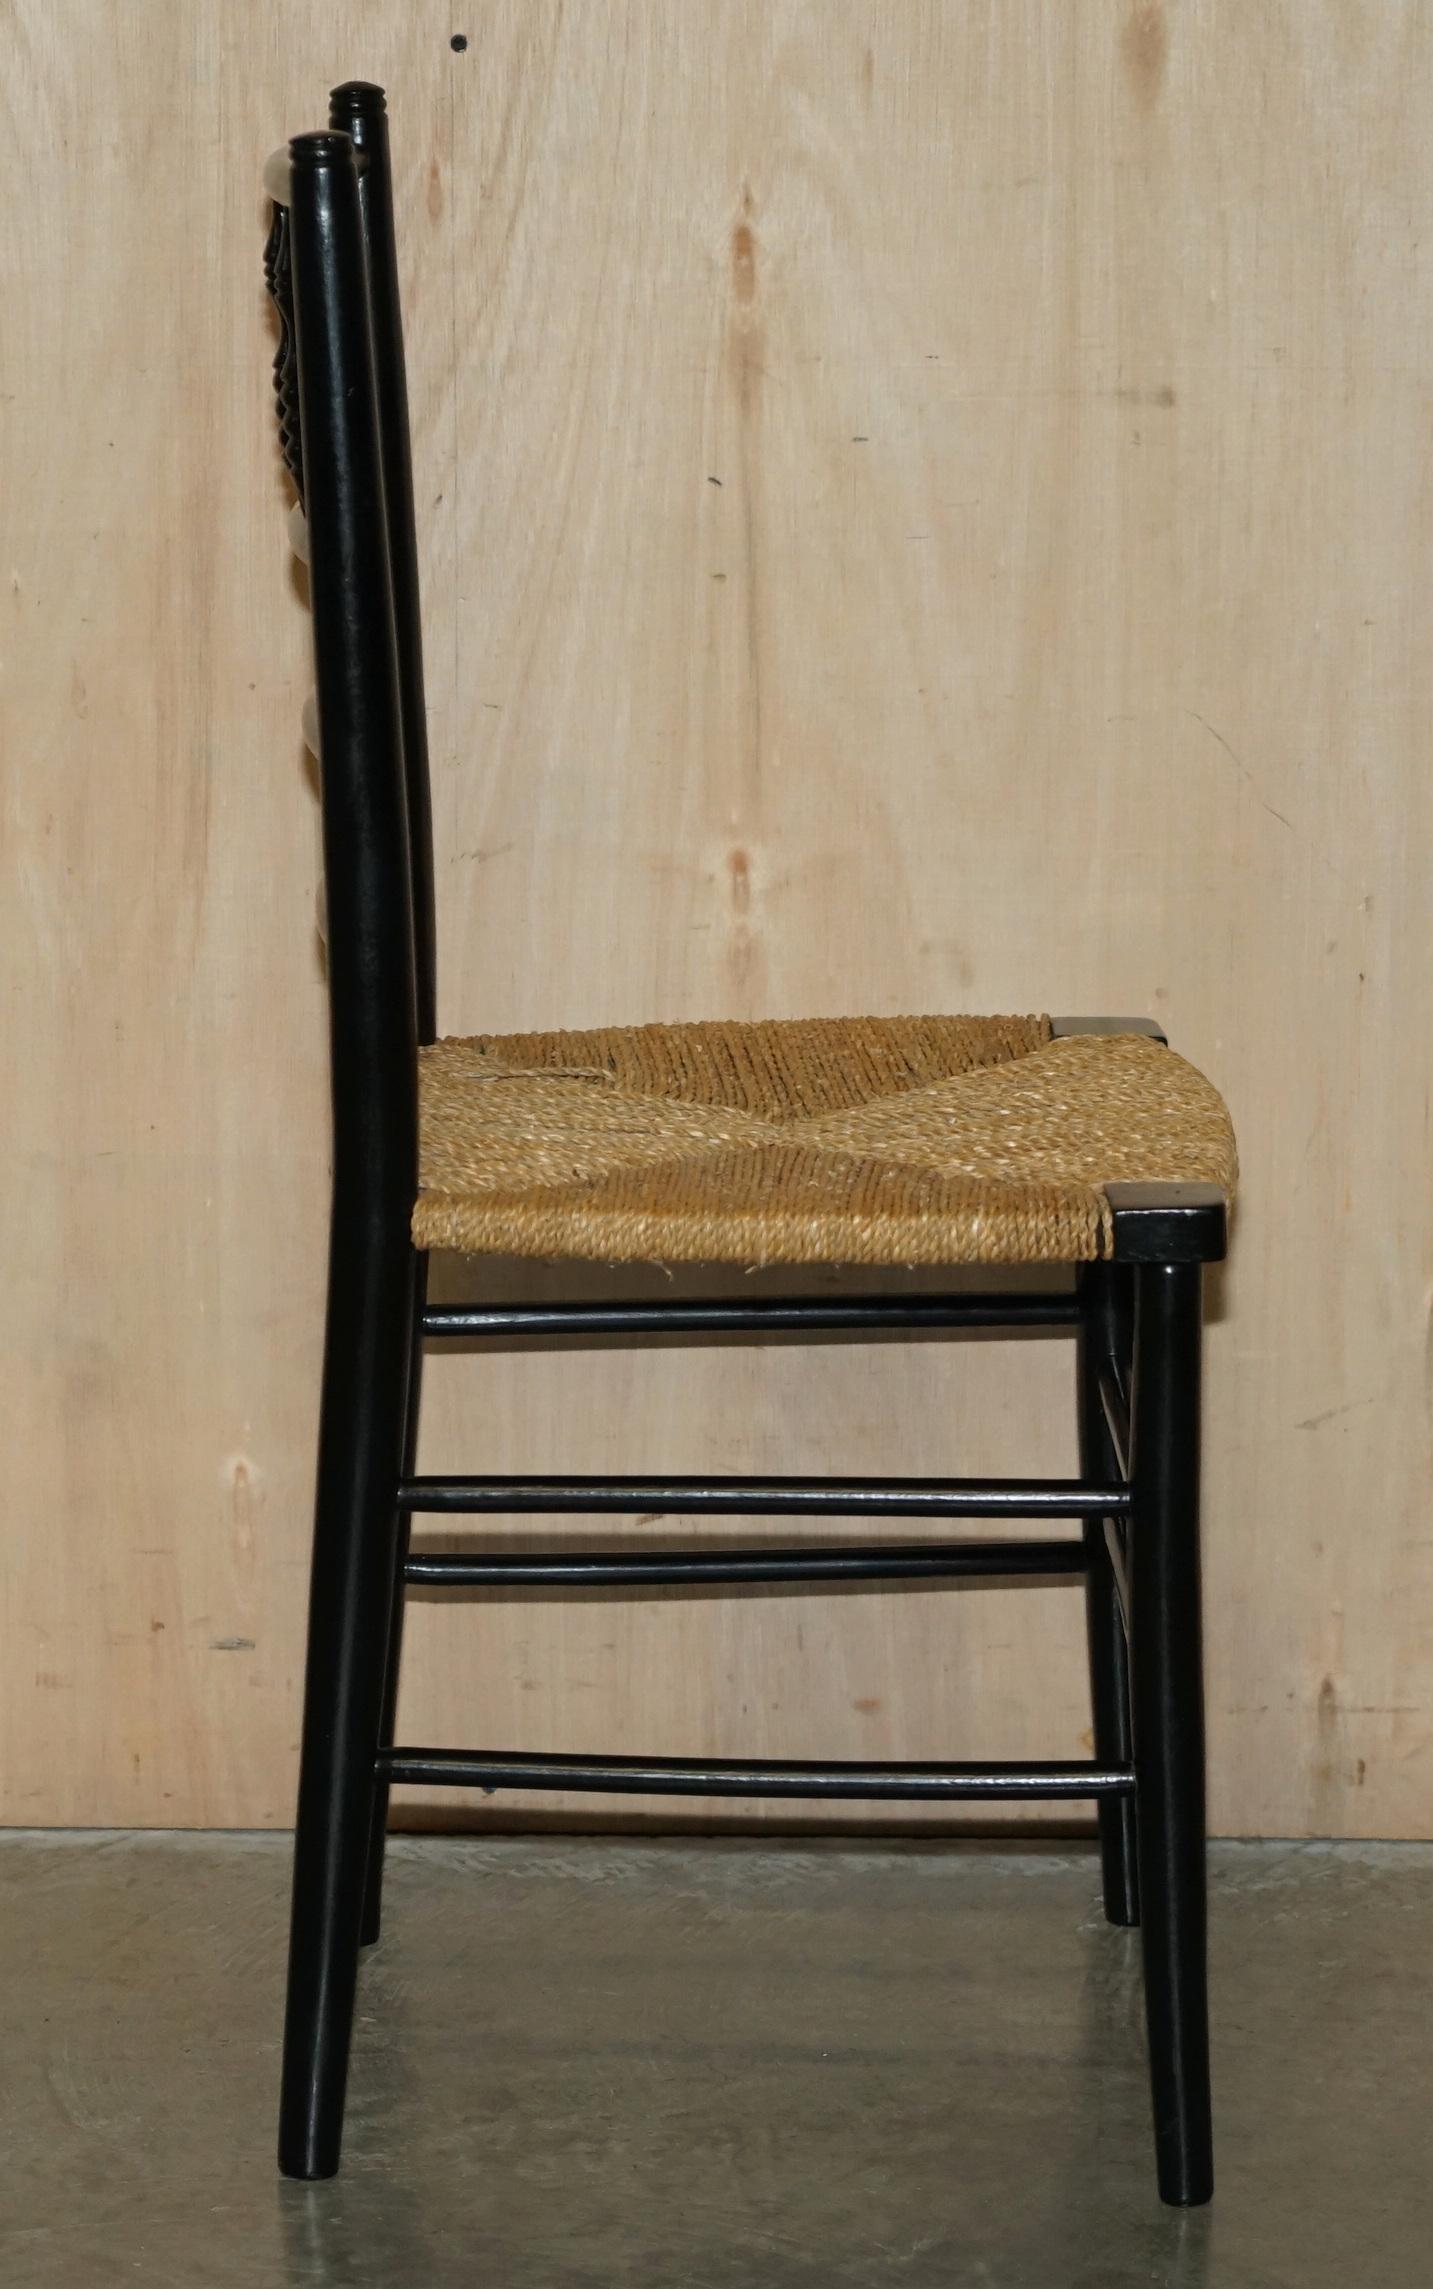 Jonc Paire de chaises d'appoint anciennes William Morris du Sussex en bois d'ébène vues au musée v&a